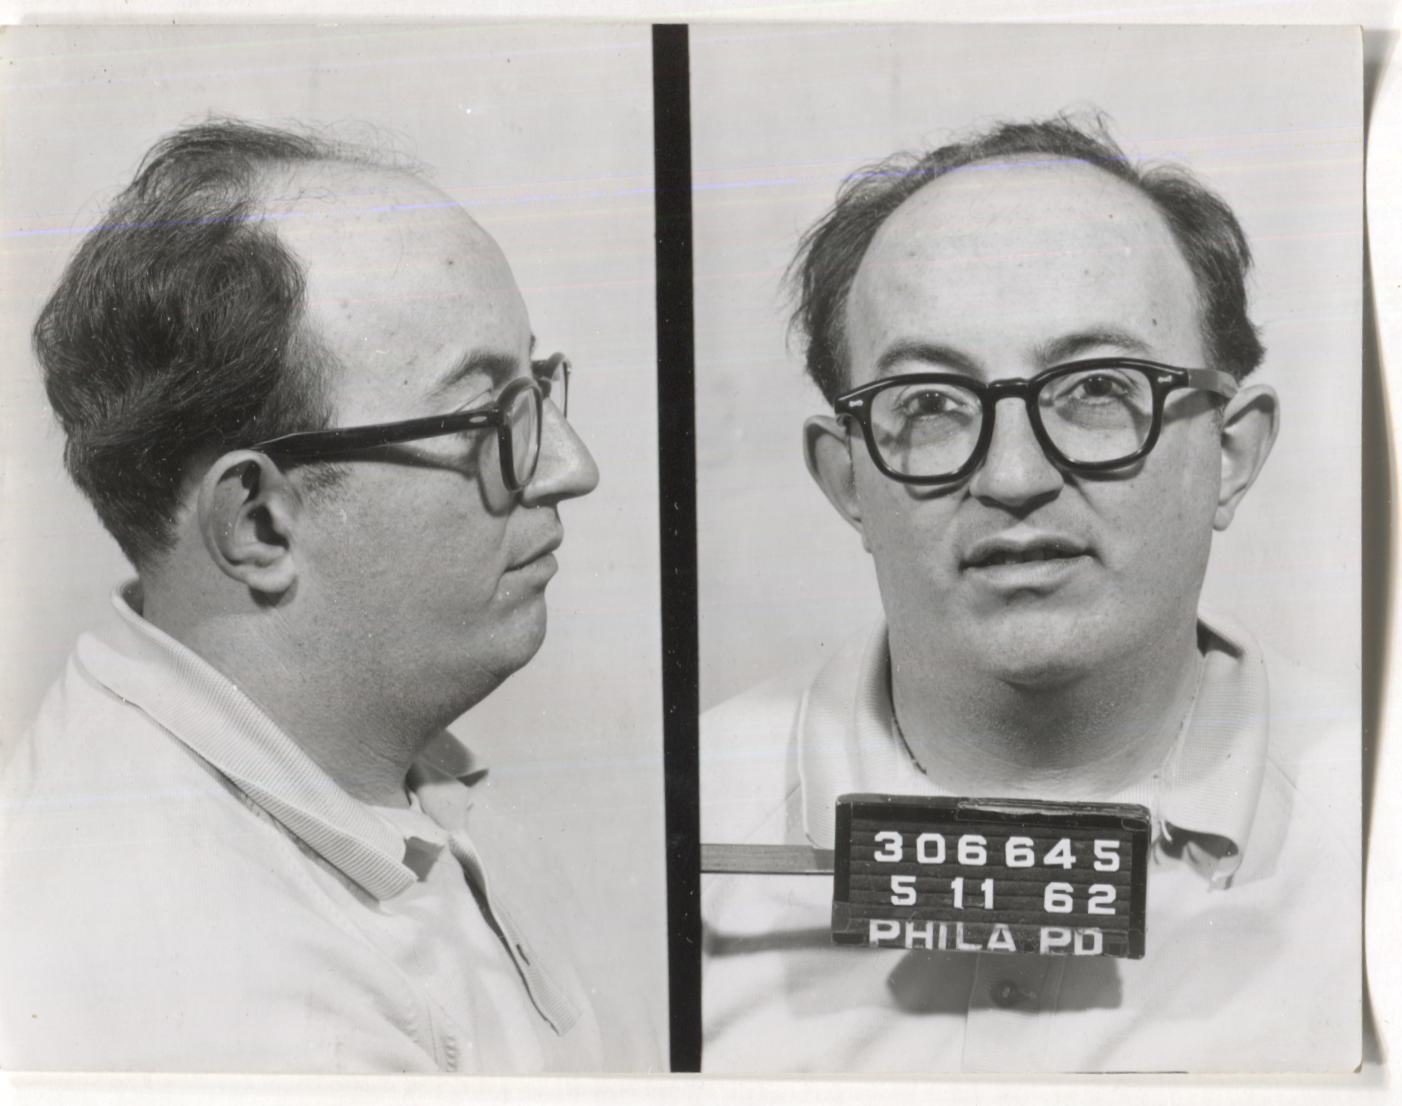 Karl Goldberg Mugshot - Arrested on 5/11/1962 for Bookmaking